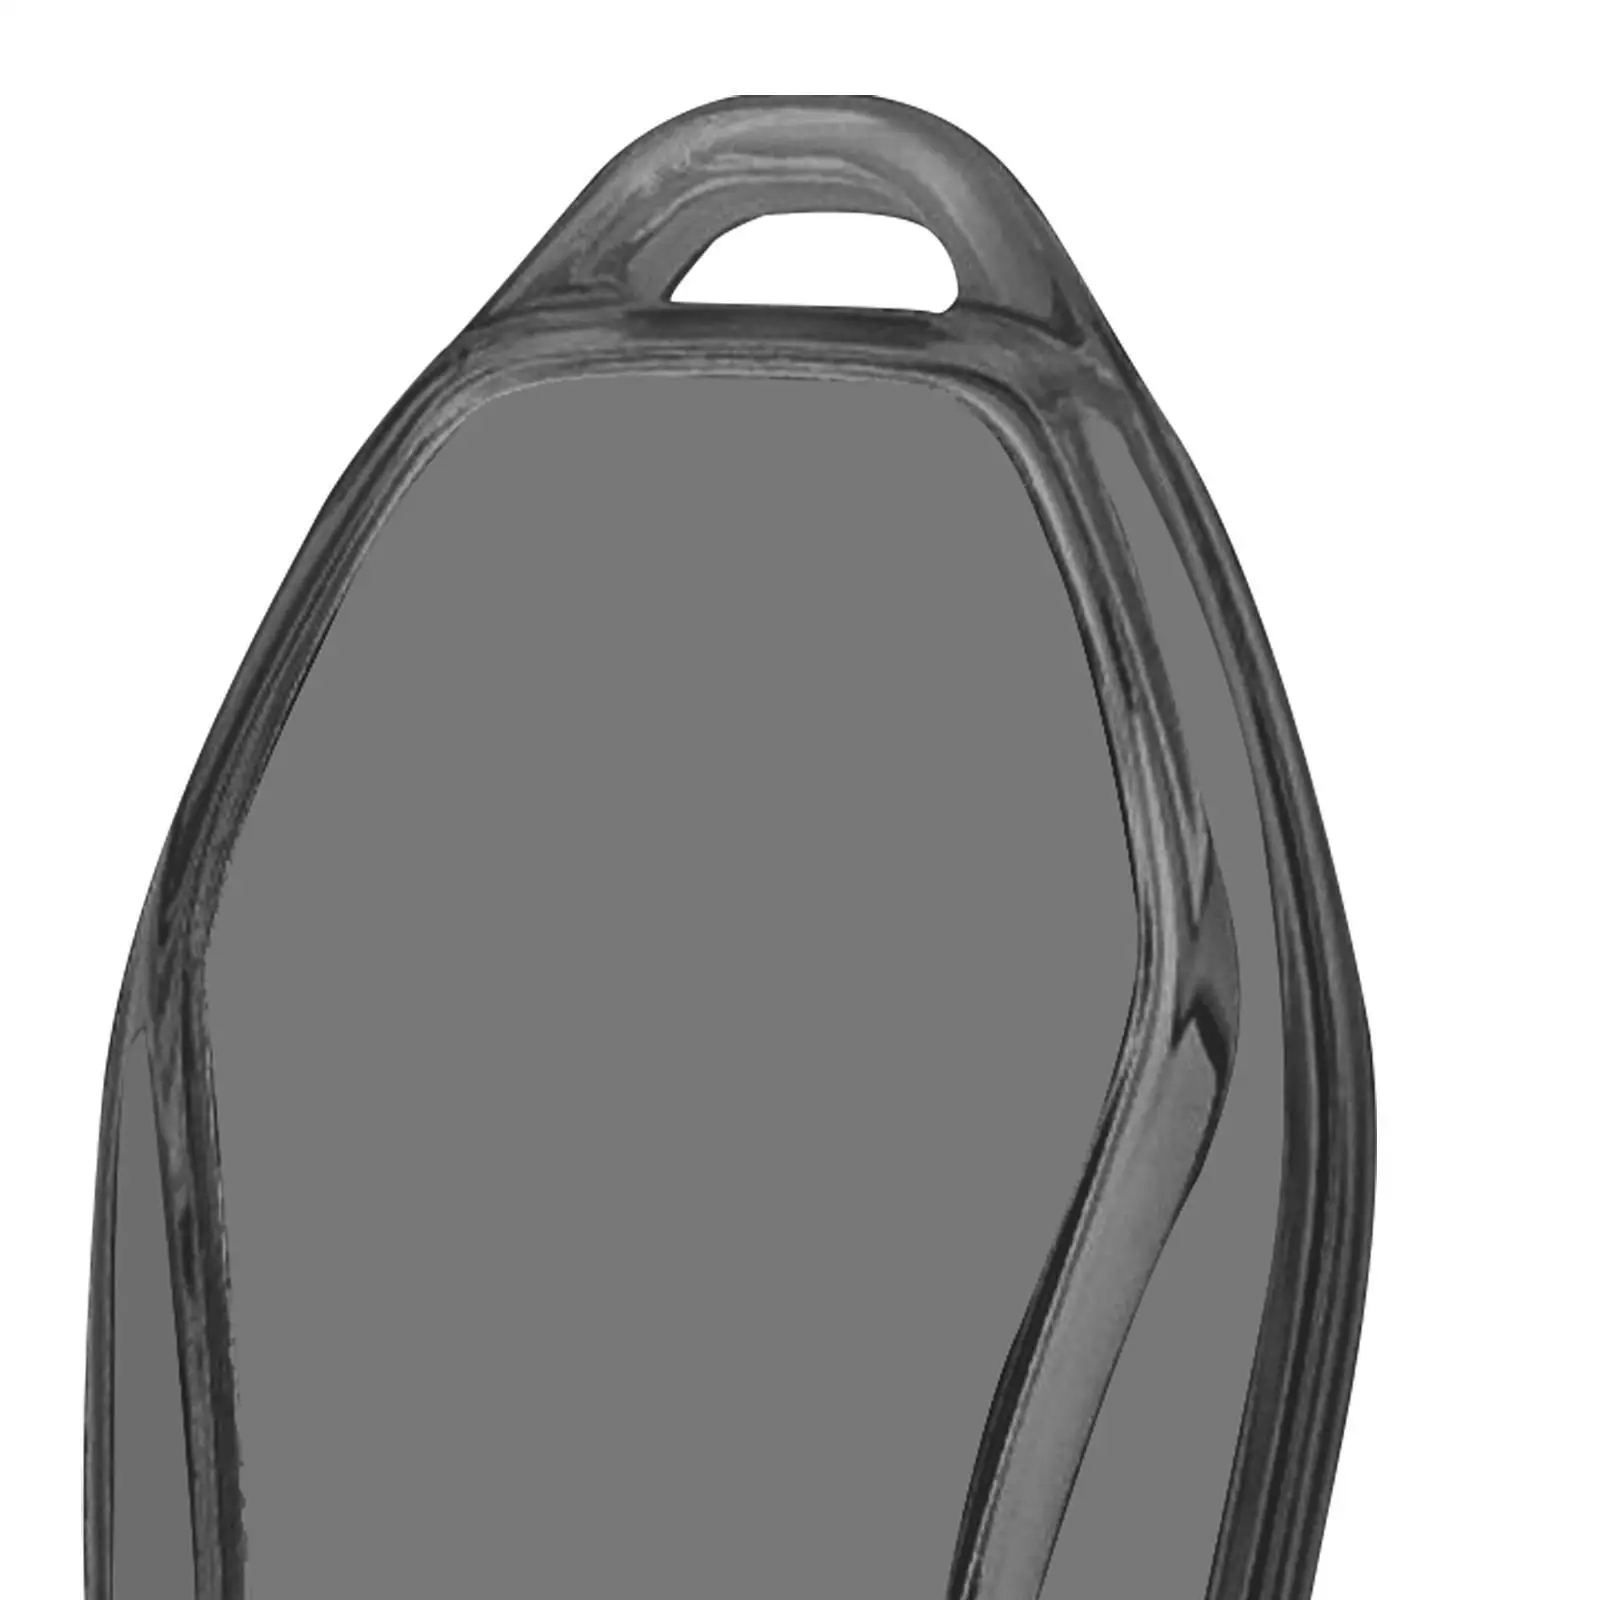 

Мягкий чехол для автомобильного ключа из ТПУ для Byd Atto 3, четко видимый, полностью защищенный, черный